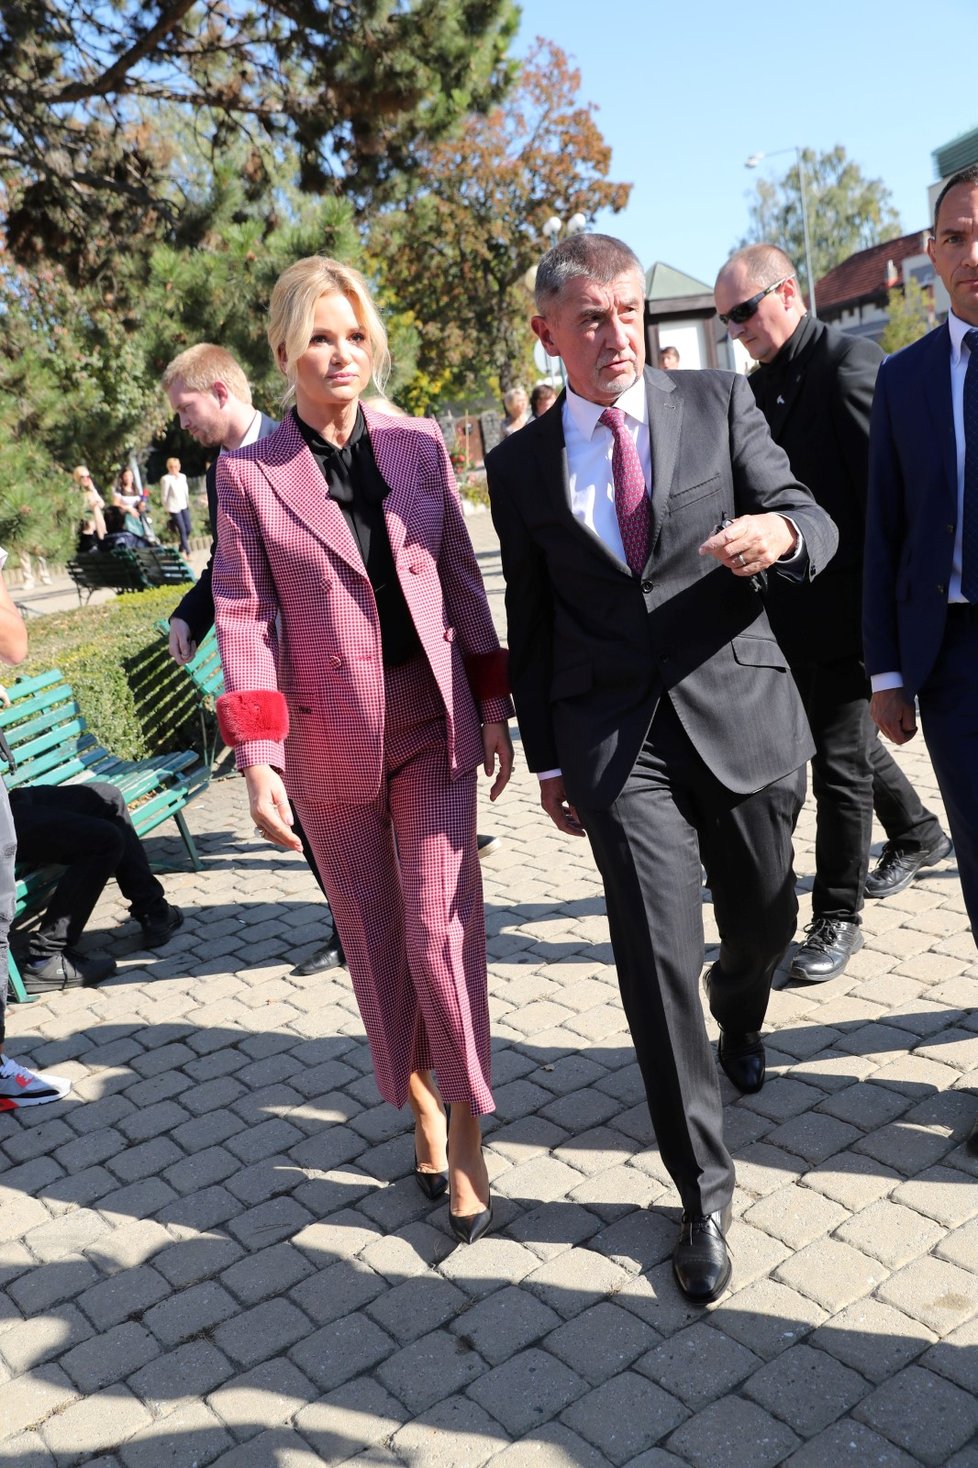 Premiér Andrej Babiš se dostavil společně se svou ženou ke komunálním volbám 2018.